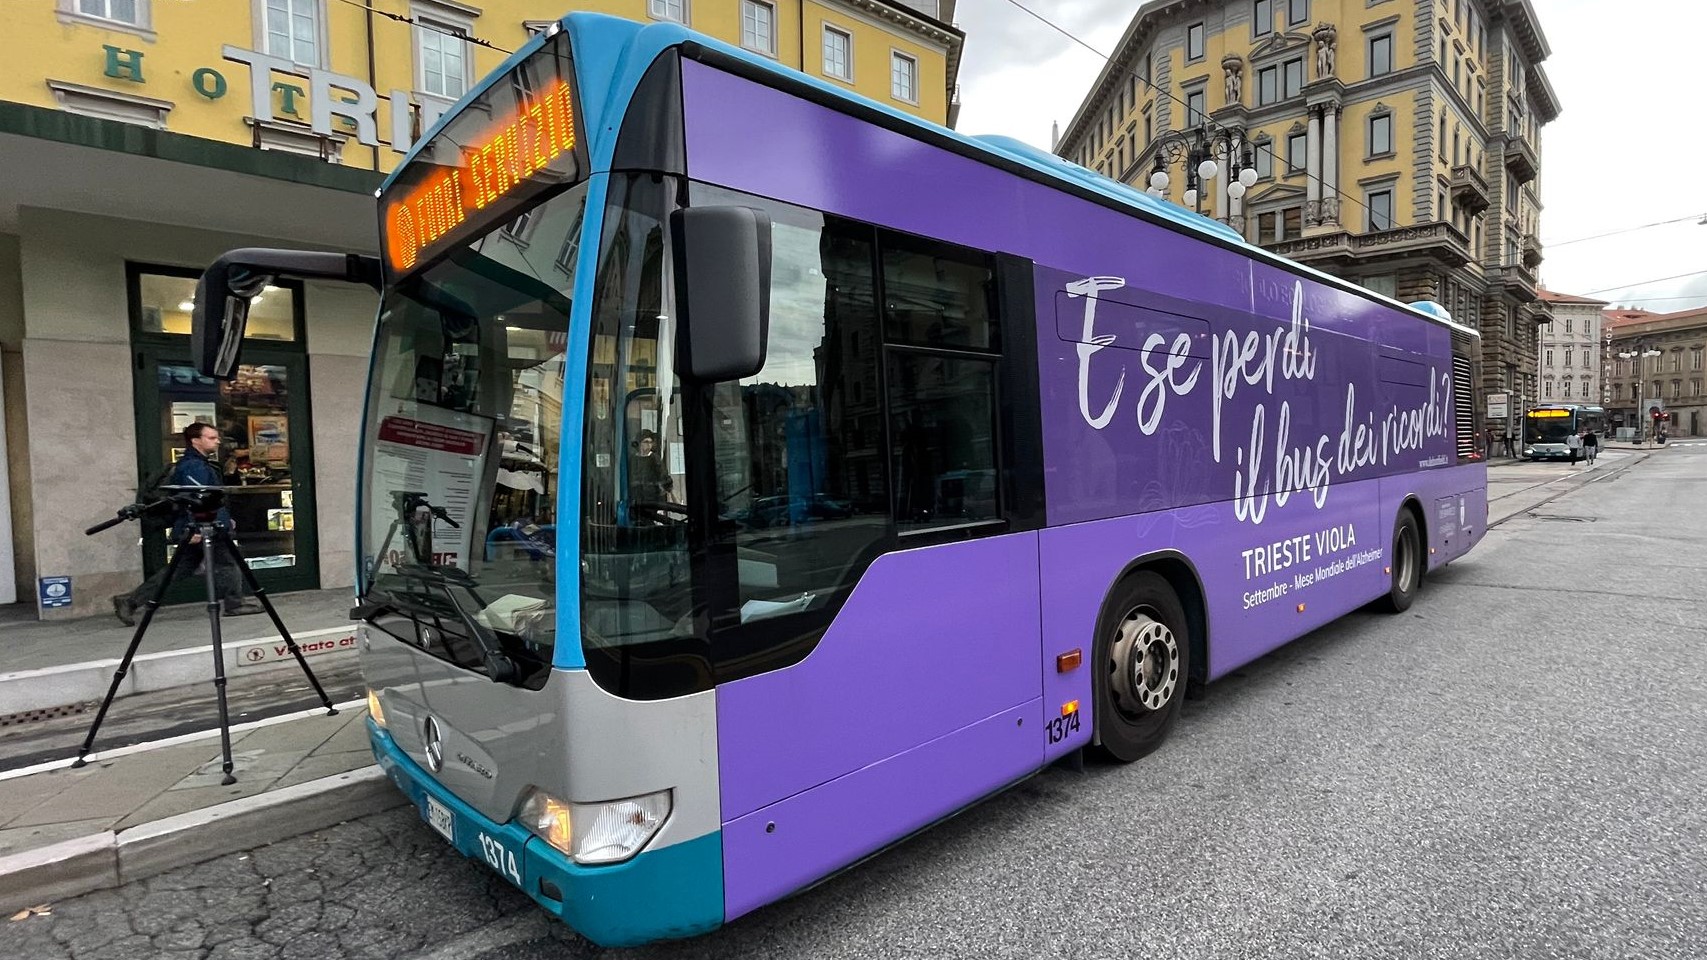 Bus di colore viola riportante la frase "E se perdi il bus dei ricordi?"